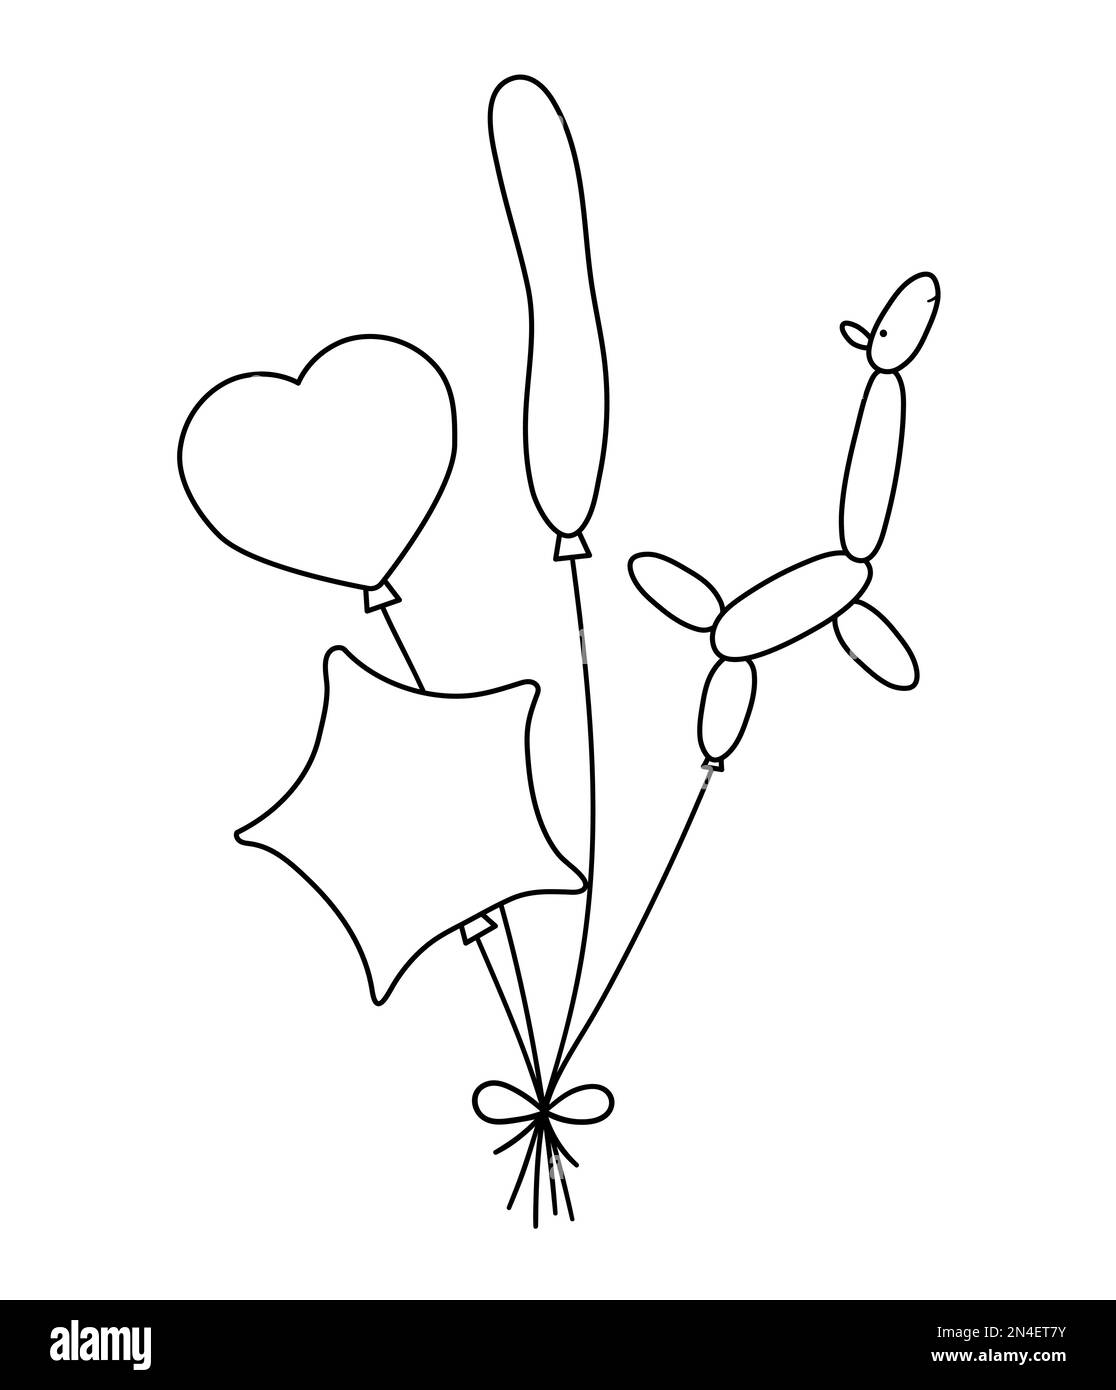 Noir vectoriel et blanc mignon bouquet de ballons de différentes formes avec noeud. Cadeau d'anniversaire amusant pour carte, poster, imprimé. Rapport d'illustration des congés Illustration de Vecteur